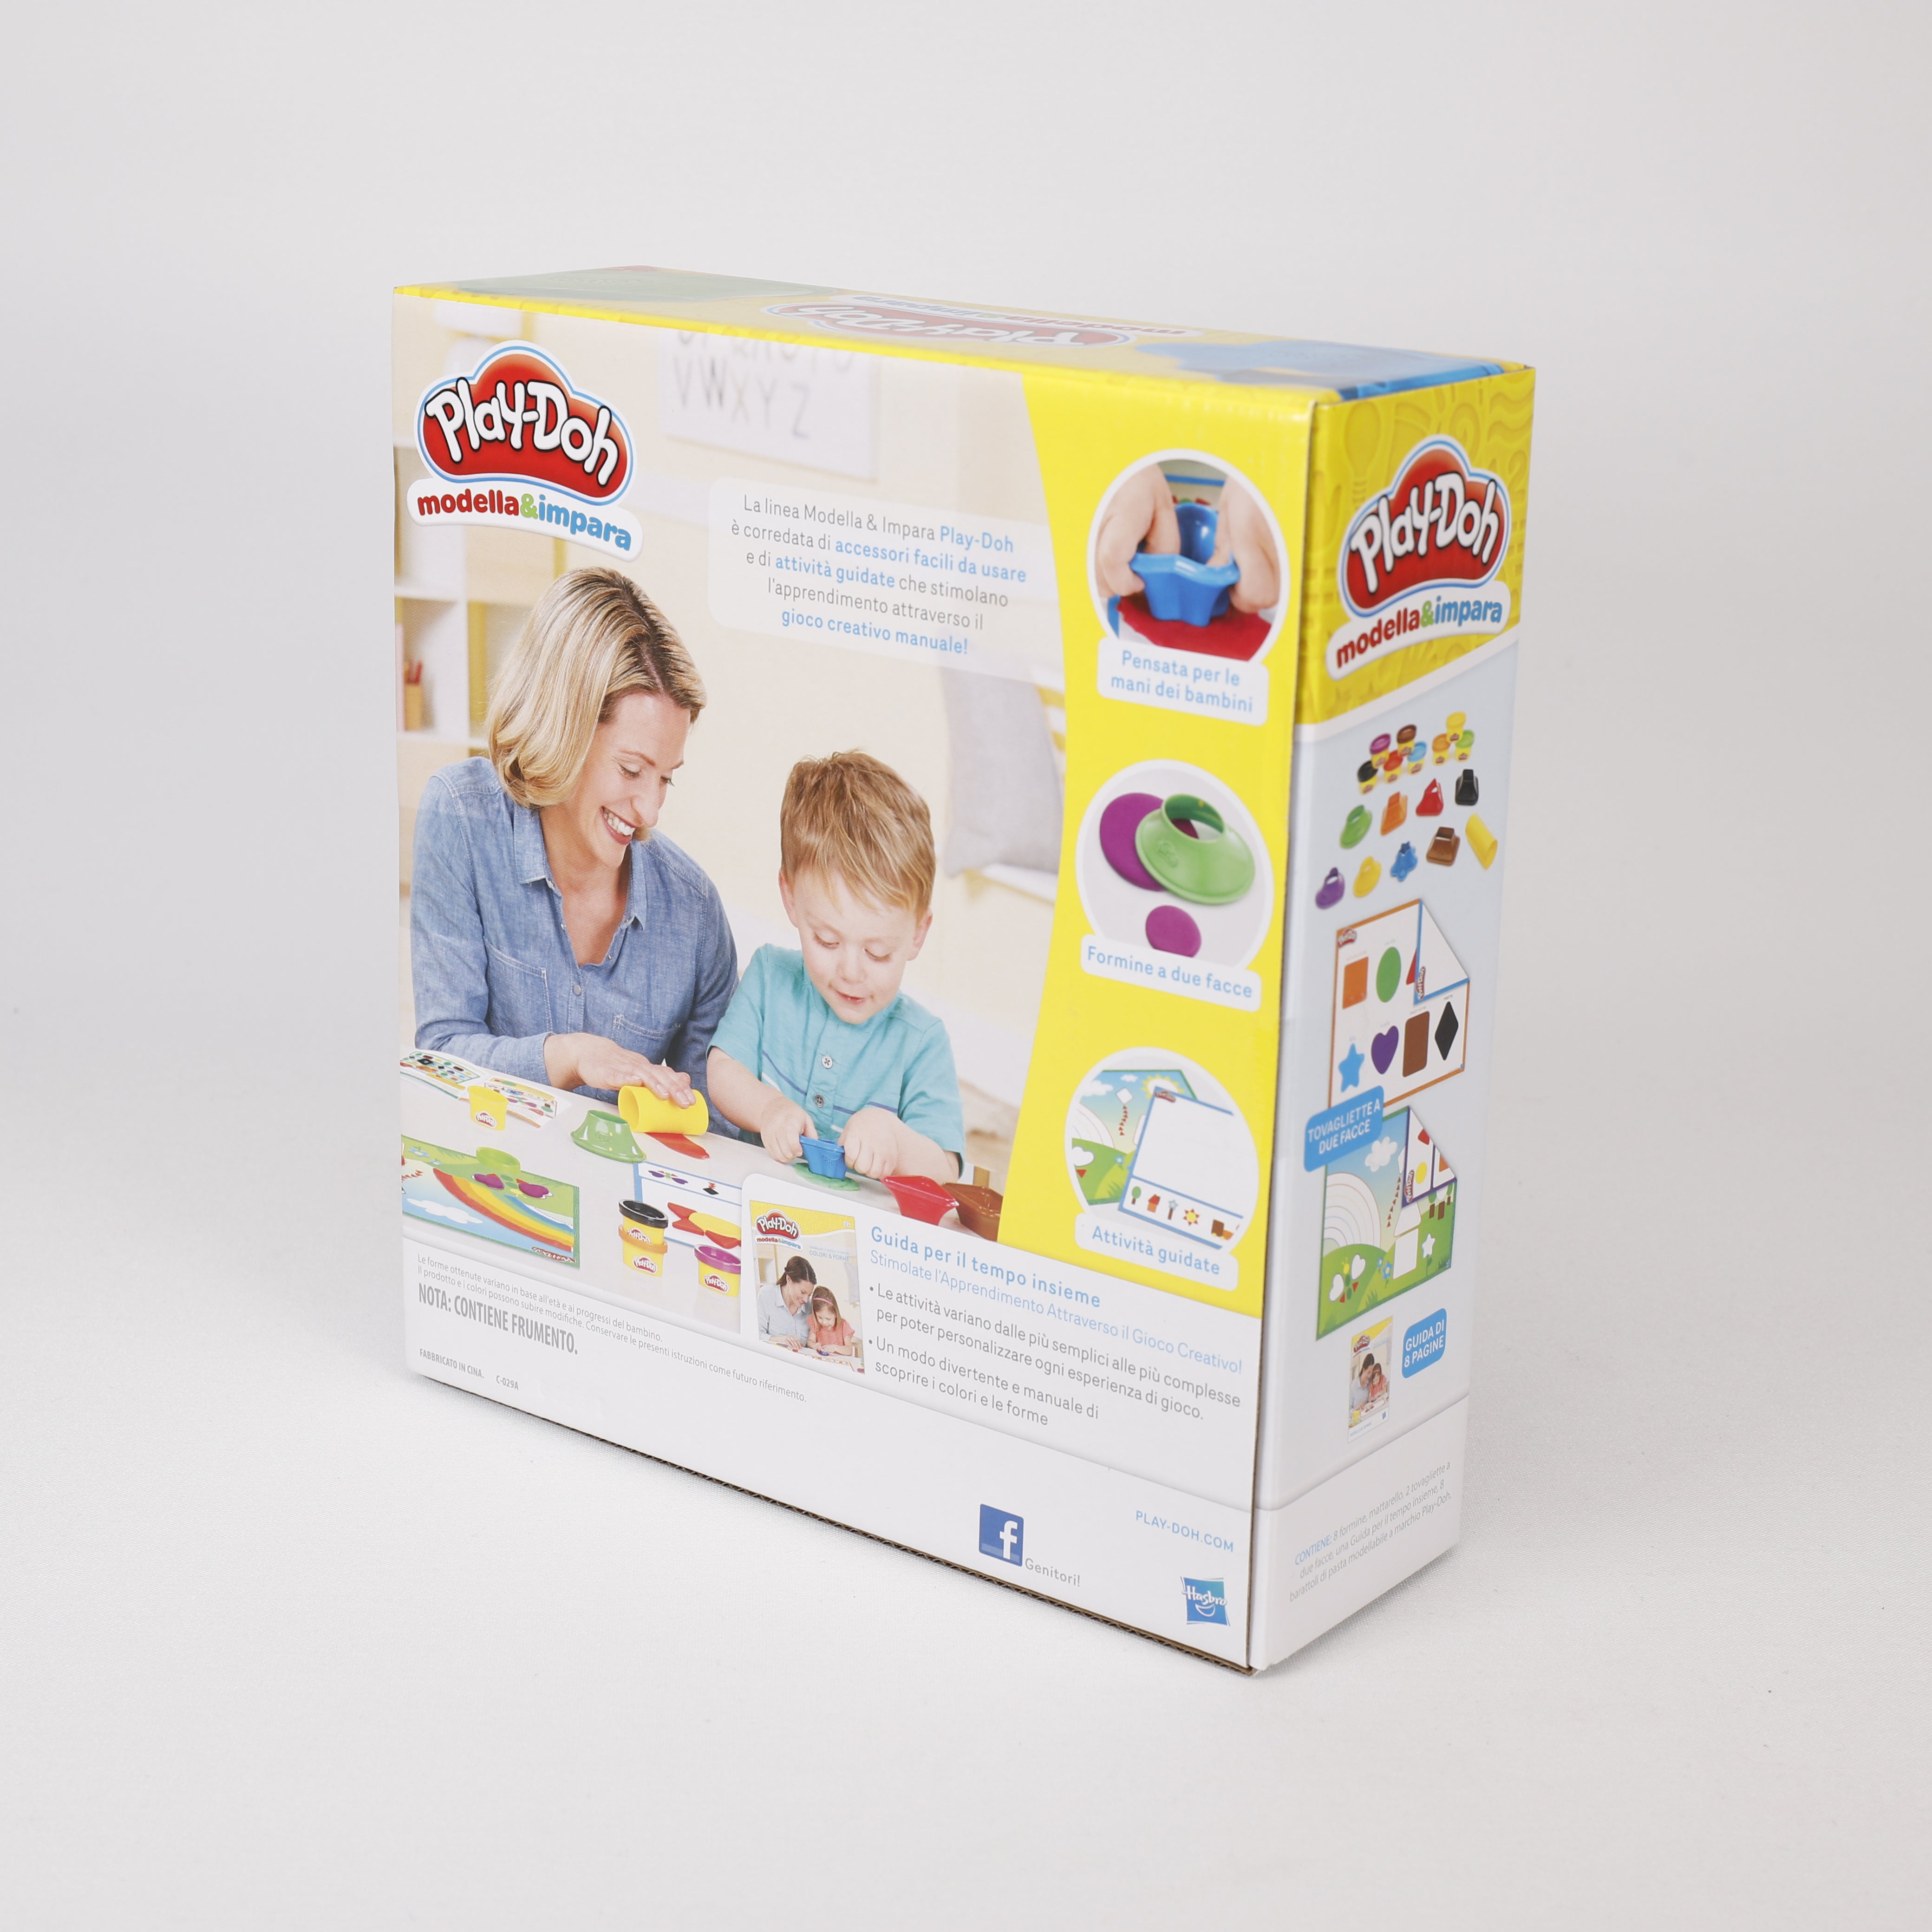 Play Doh Modella & Impara, Knete 8 Packung Farben & Formen, lernen, +2 Spielzeug